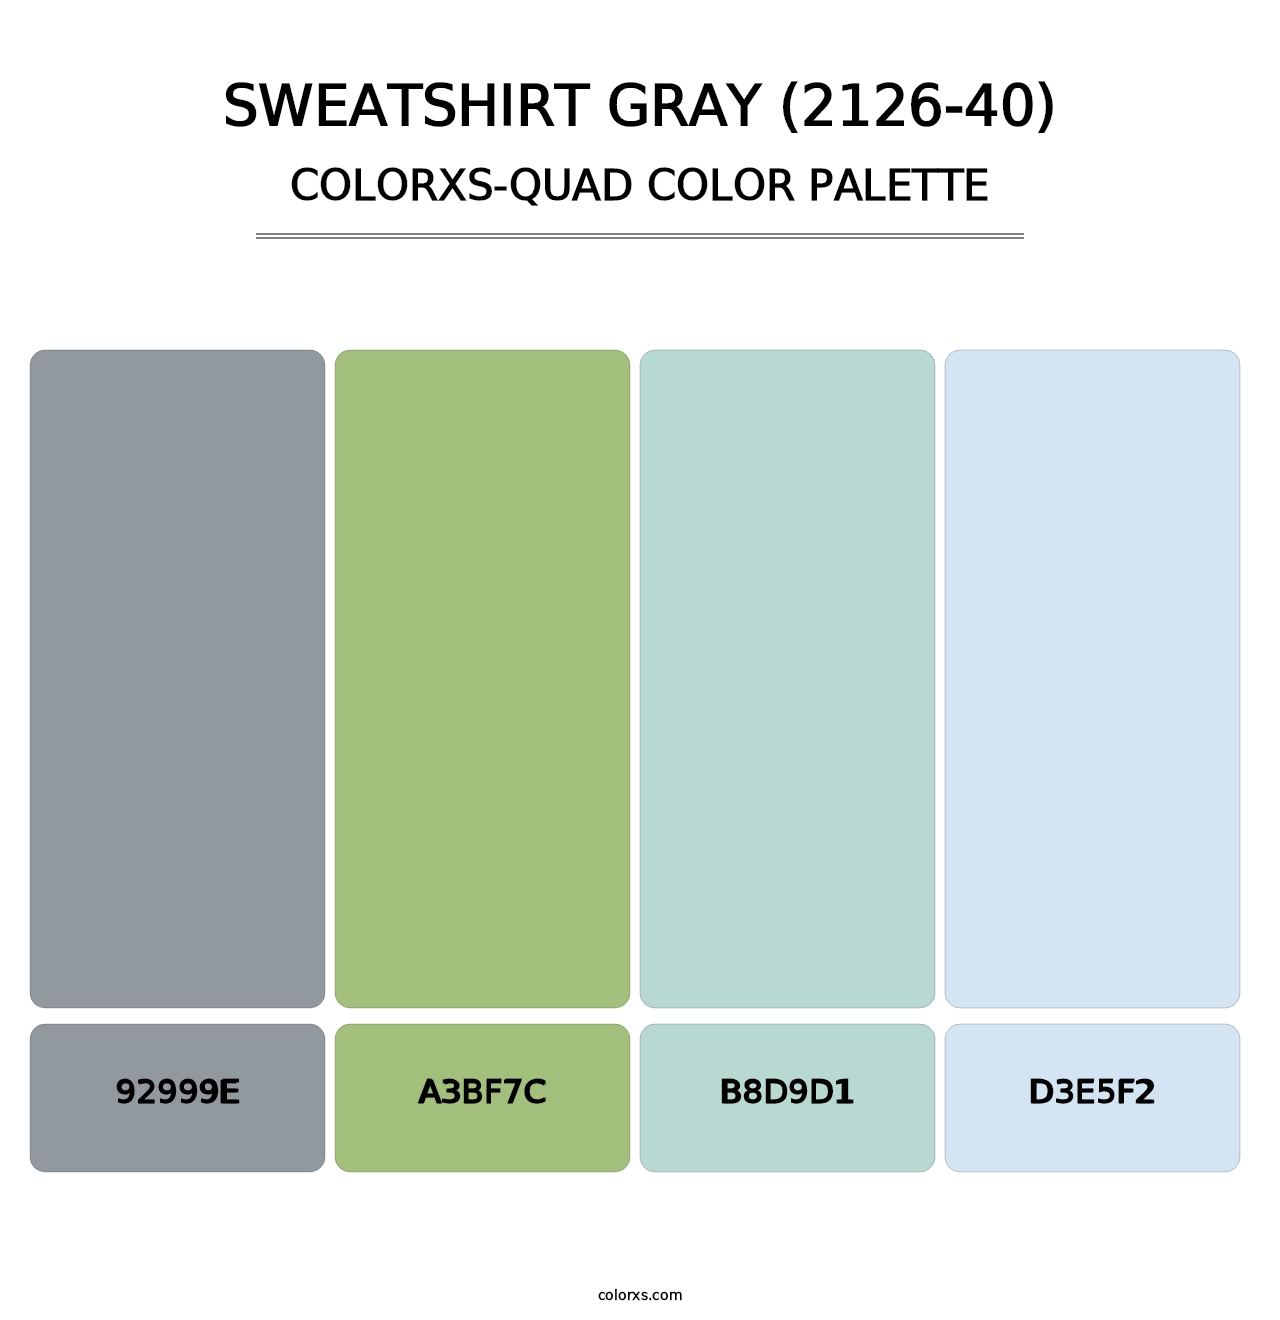 Sweatshirt Gray (2126-40) - Colorxs Quad Palette